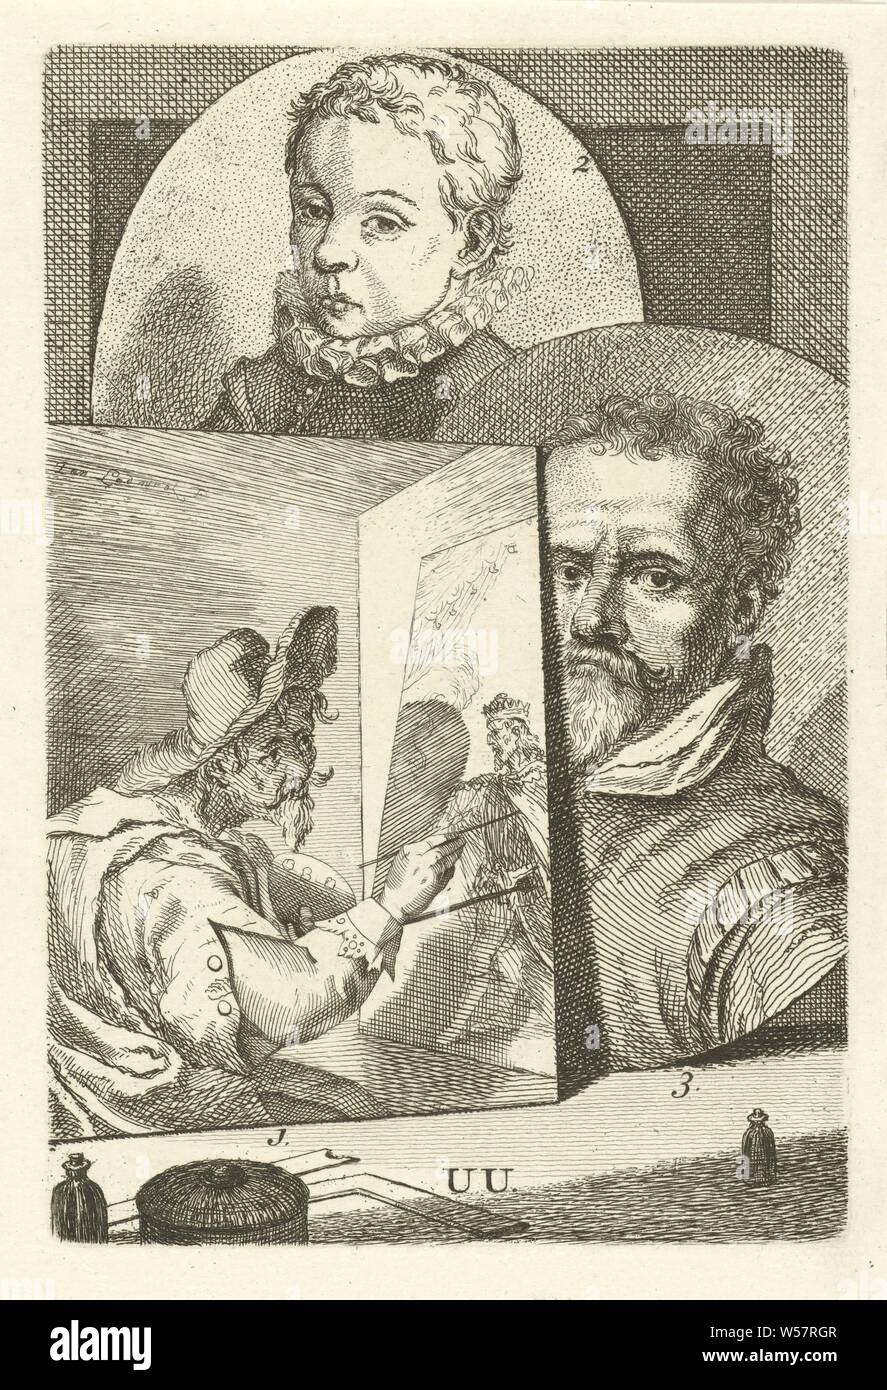 Portraits de Joachim Wtewael, Zacharias Dolendo et Hendrik de Keyser J, trois portraits de l'artiste. Portrait de Joachim Wtewael (no. 1), Zacharias Dolendo (no. 2) et Hendrik de Keyser I (no. 3). Centre d'impression inférieure marquée : UU, Joachim Wtewael, Zacharias Dolendo, Hendrik de Keyser (I), Jan l'Amiral (mentionné sur l'objet), 1764, papier, gravure, h 154 mm × W 104 mm Banque D'Images